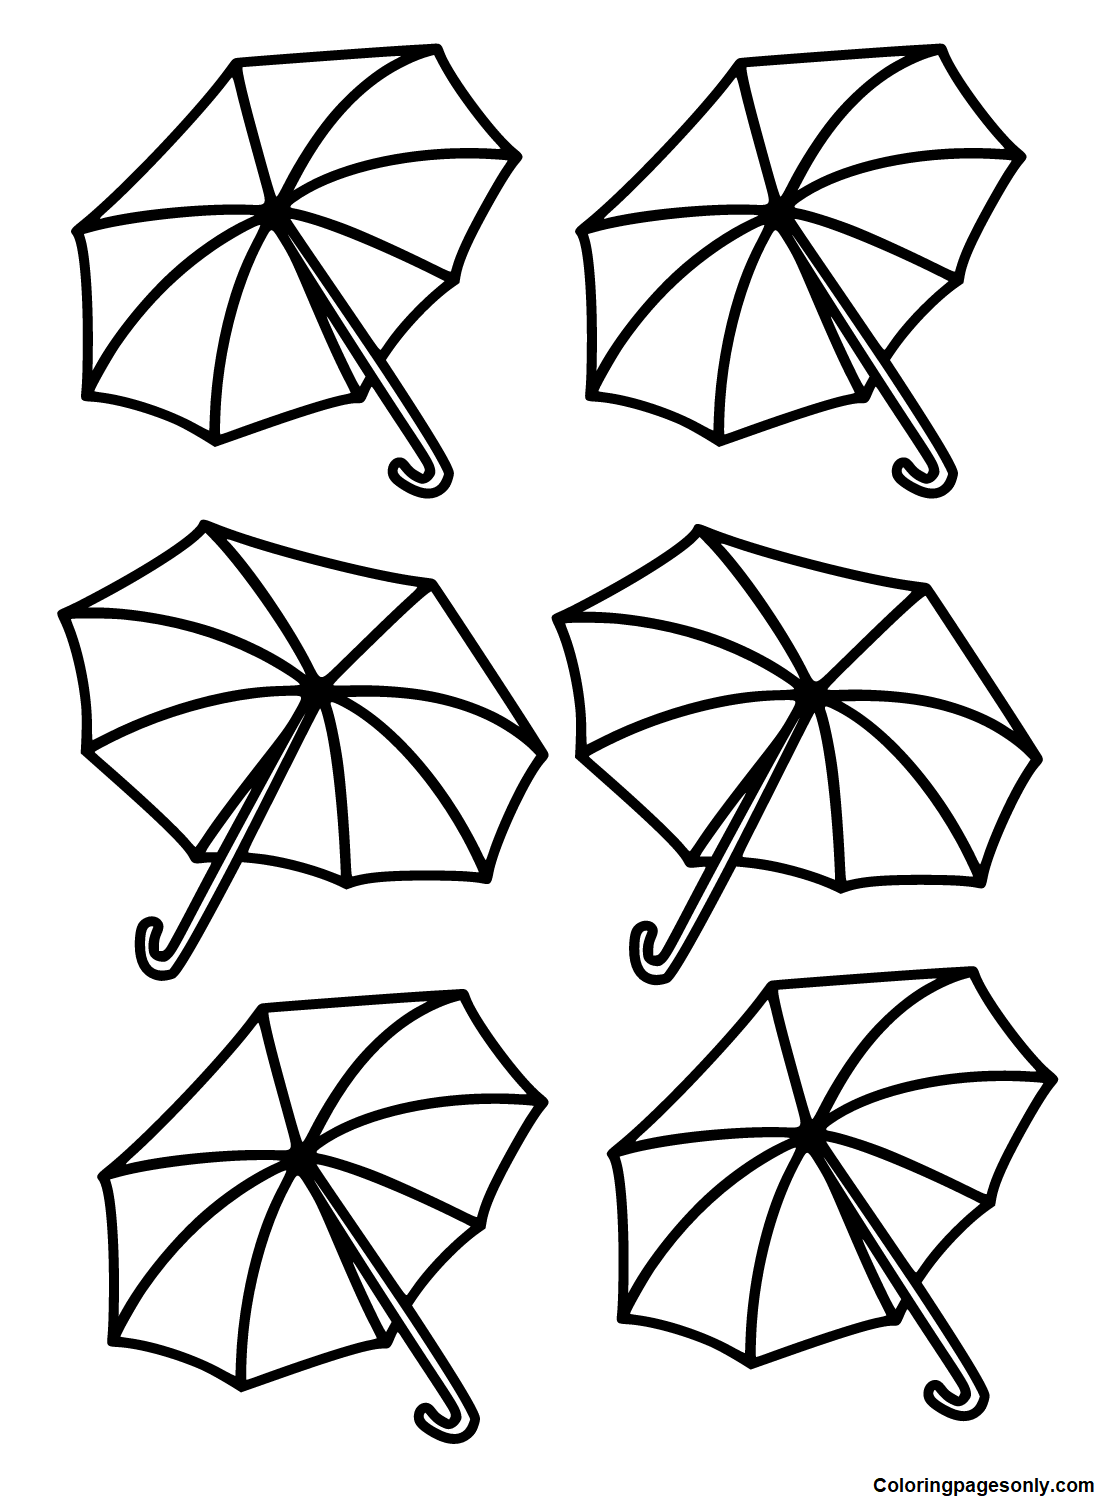 Guarda-chuvas abertos da Umbrella